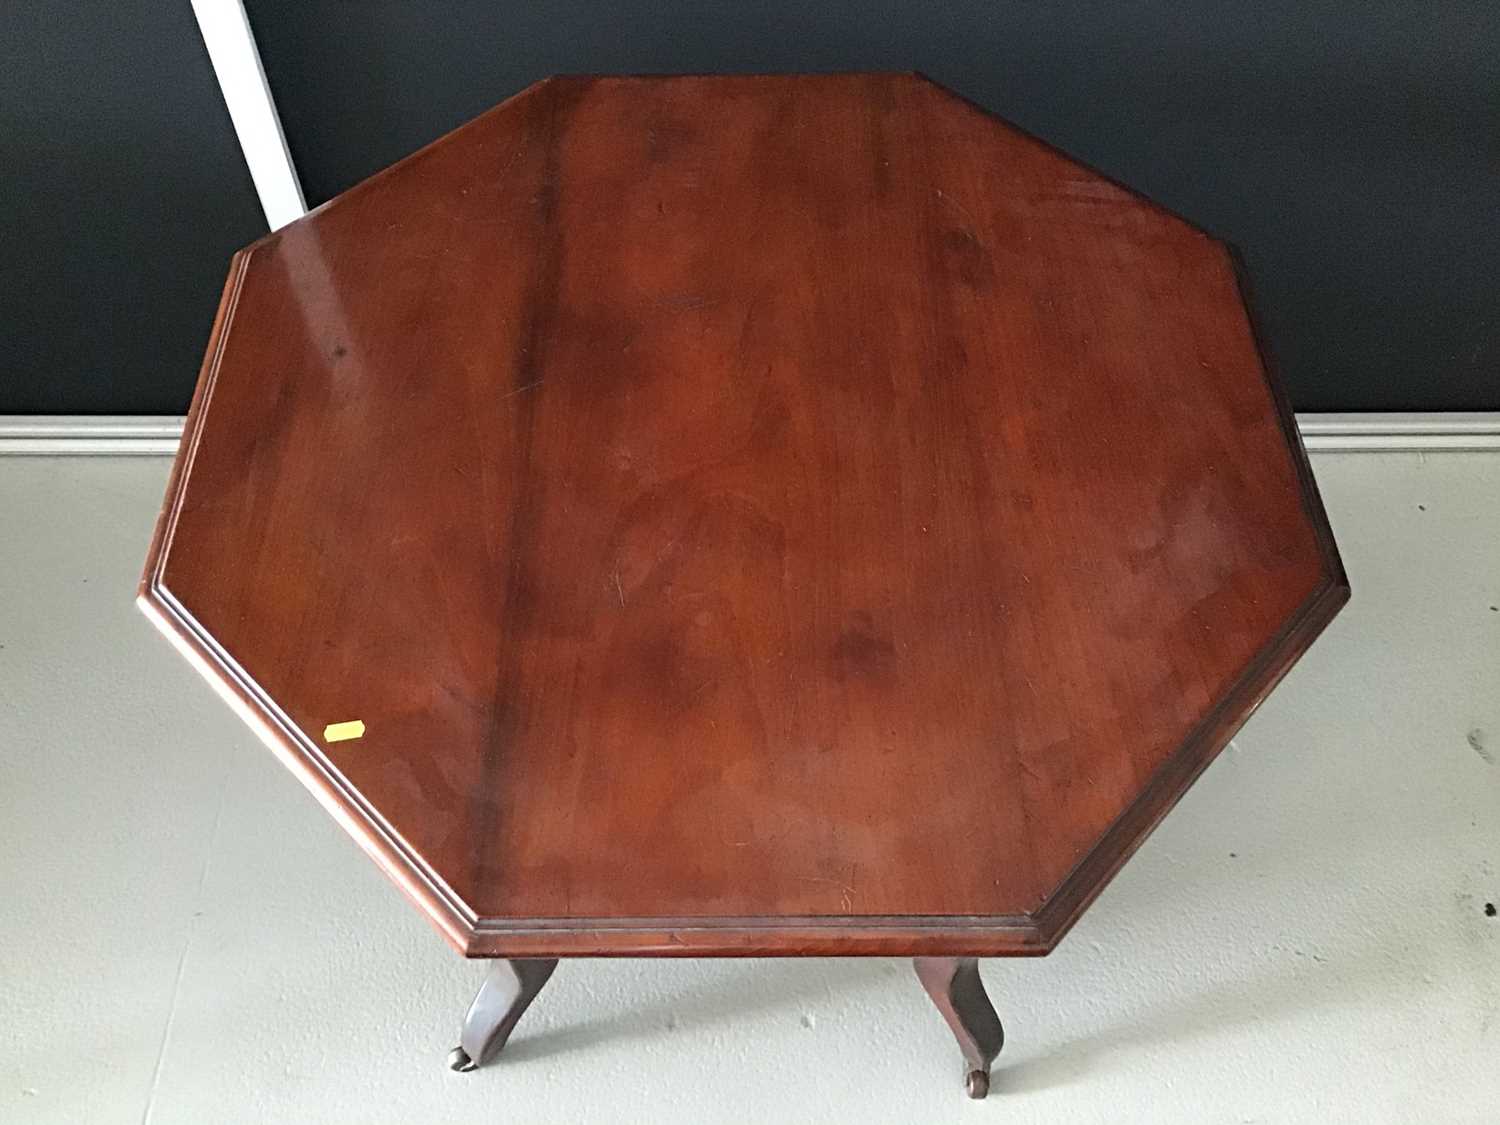 Edwardian mahogany octagonal table - Image 2 of 2